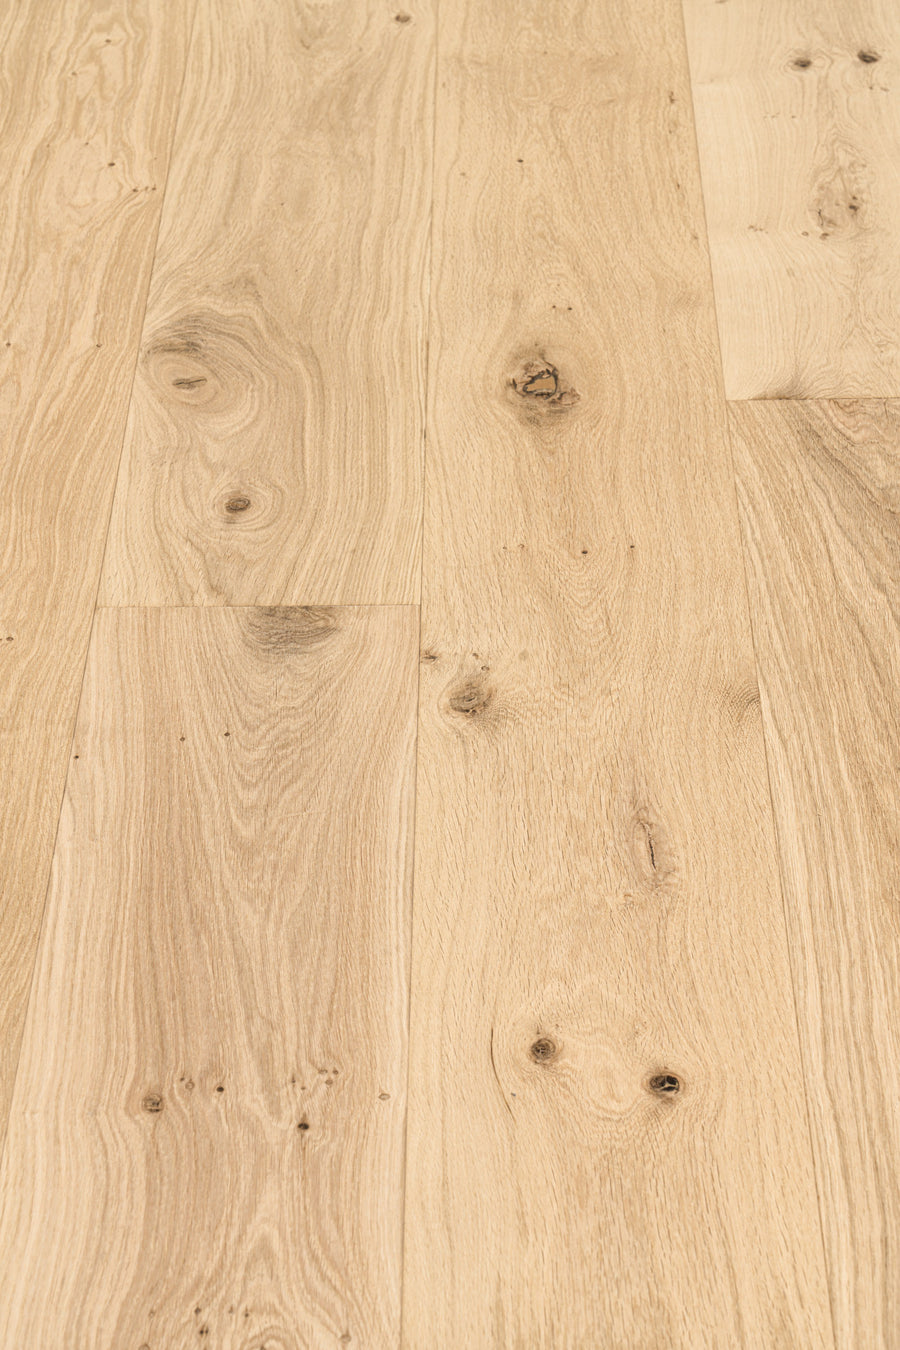 90 New Unfinished hardwood flooring calgary for Ideas